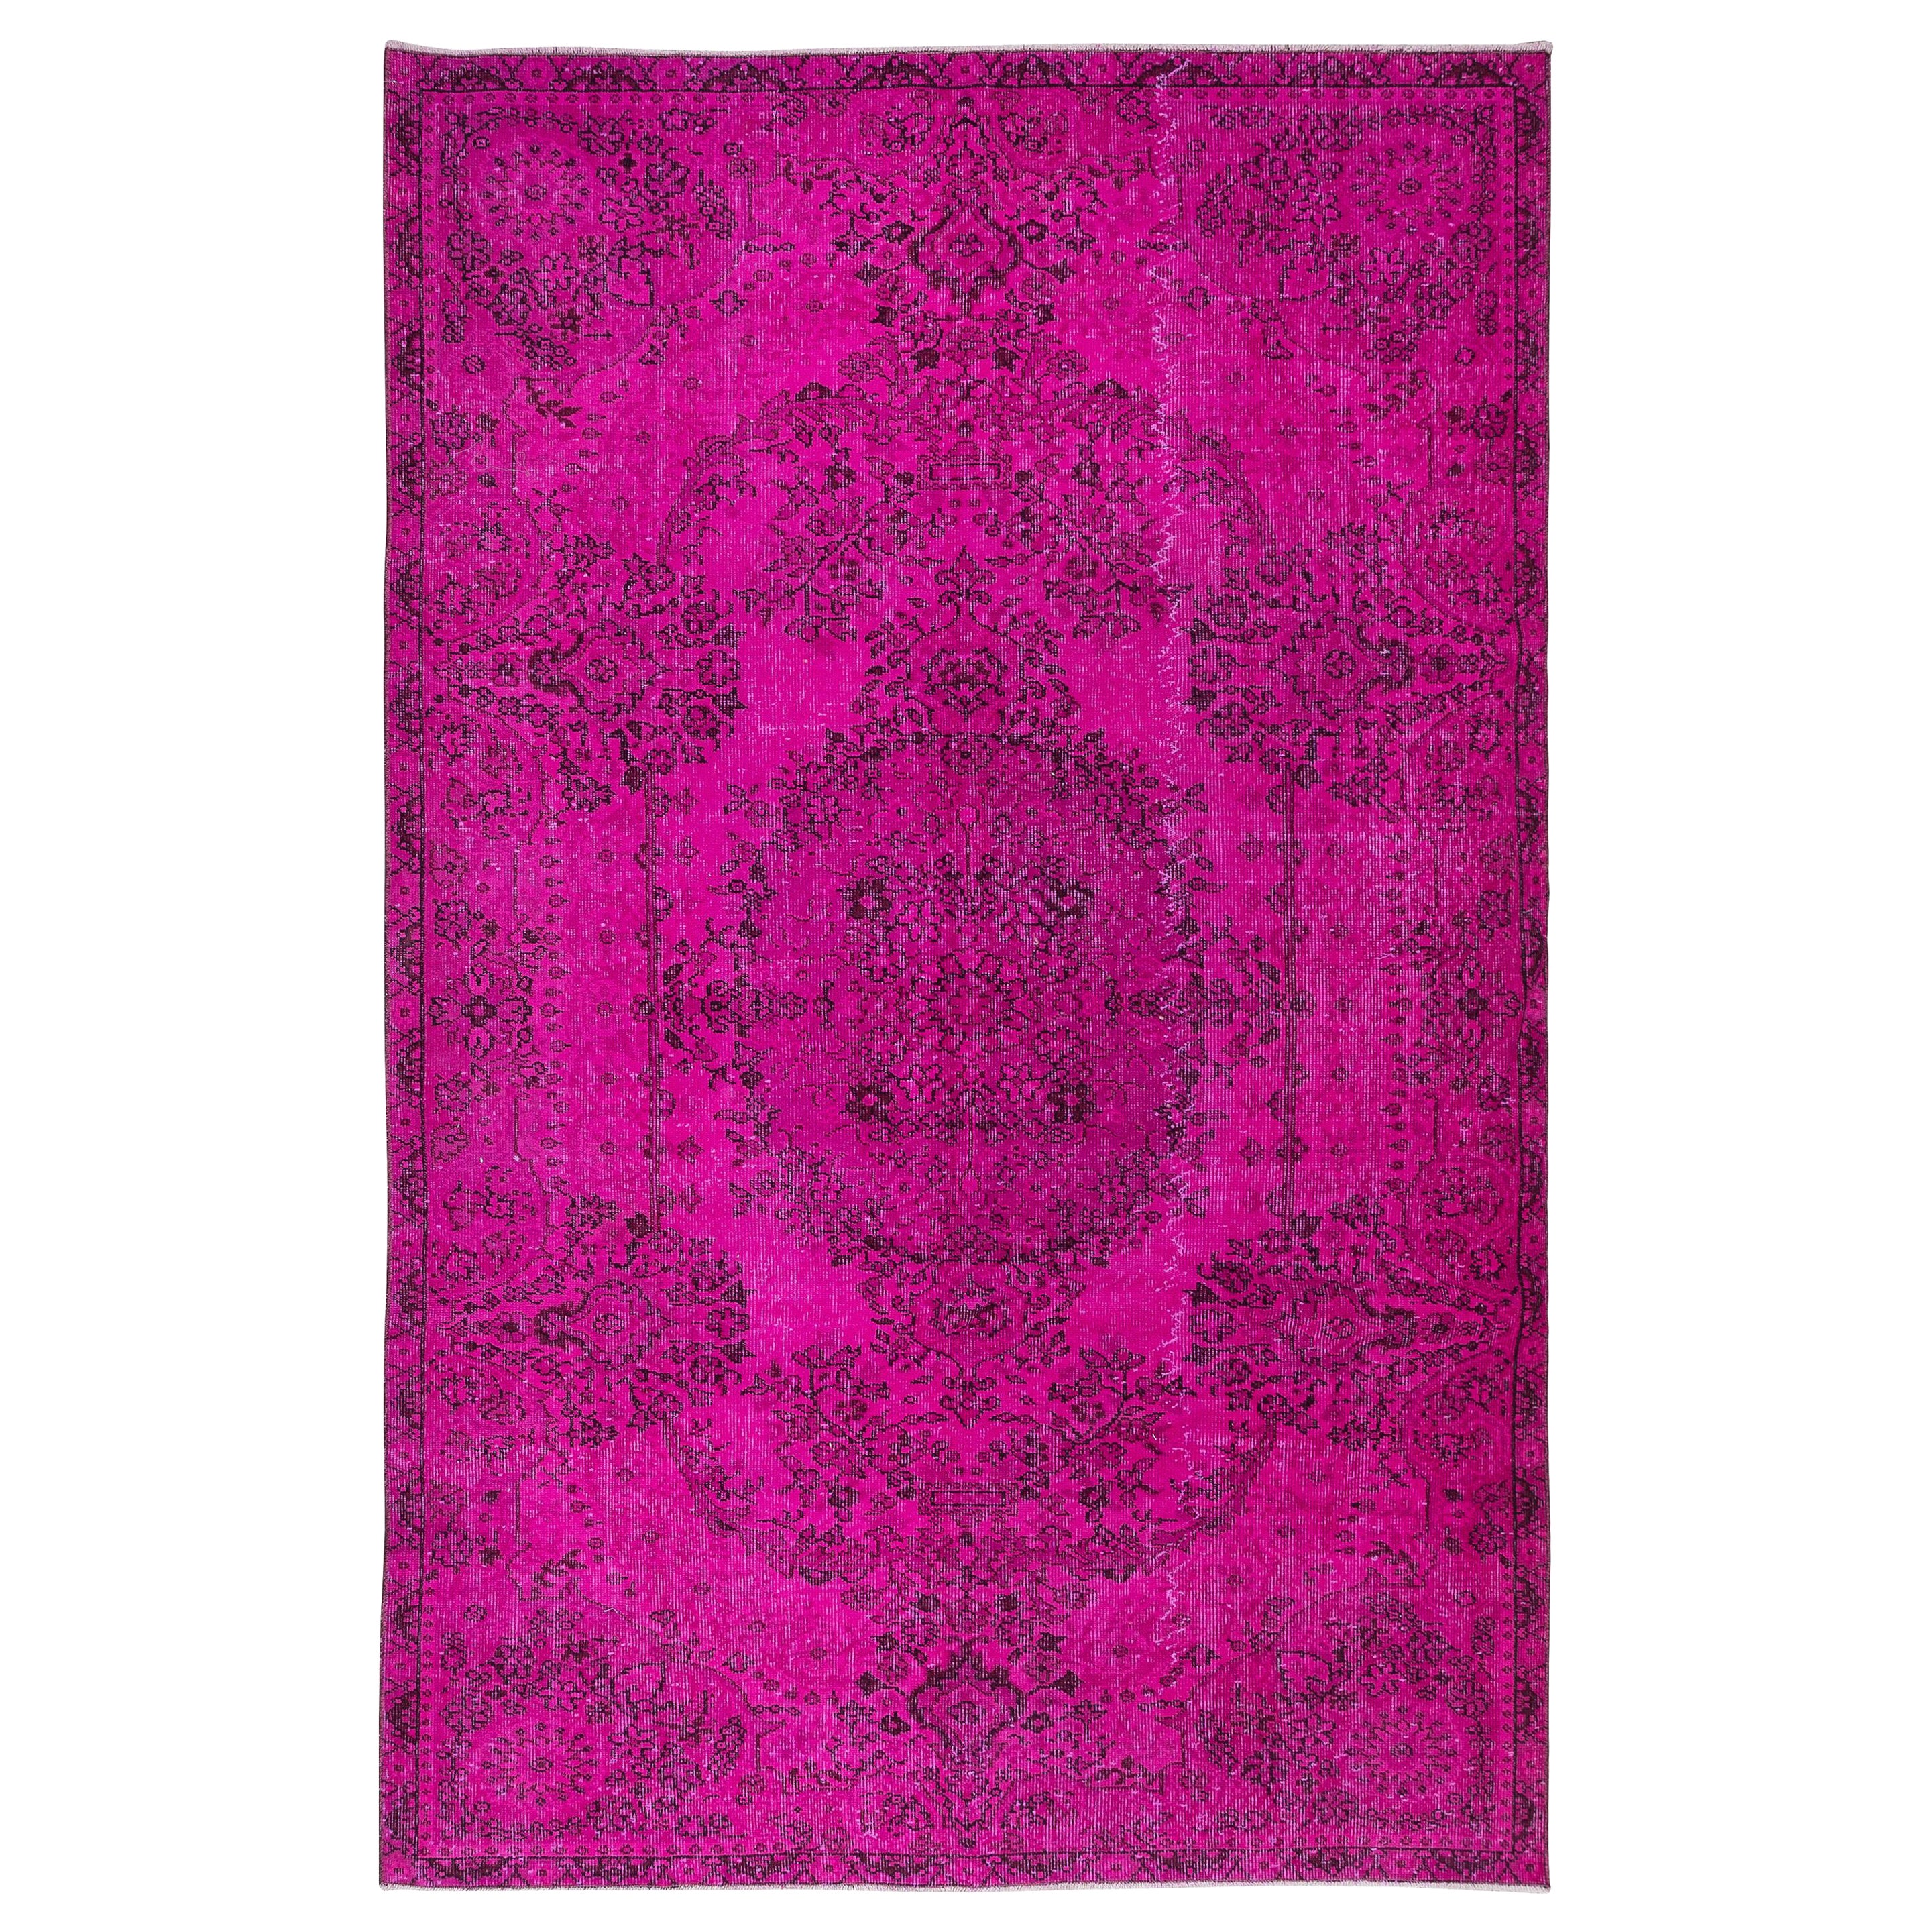 6.4x9.7 Ft Hot Pink Handmade Turkish Wool Area Rug for Modern Interiors (Tapis de laine turque fait à la main pour les intérieurs modernes)